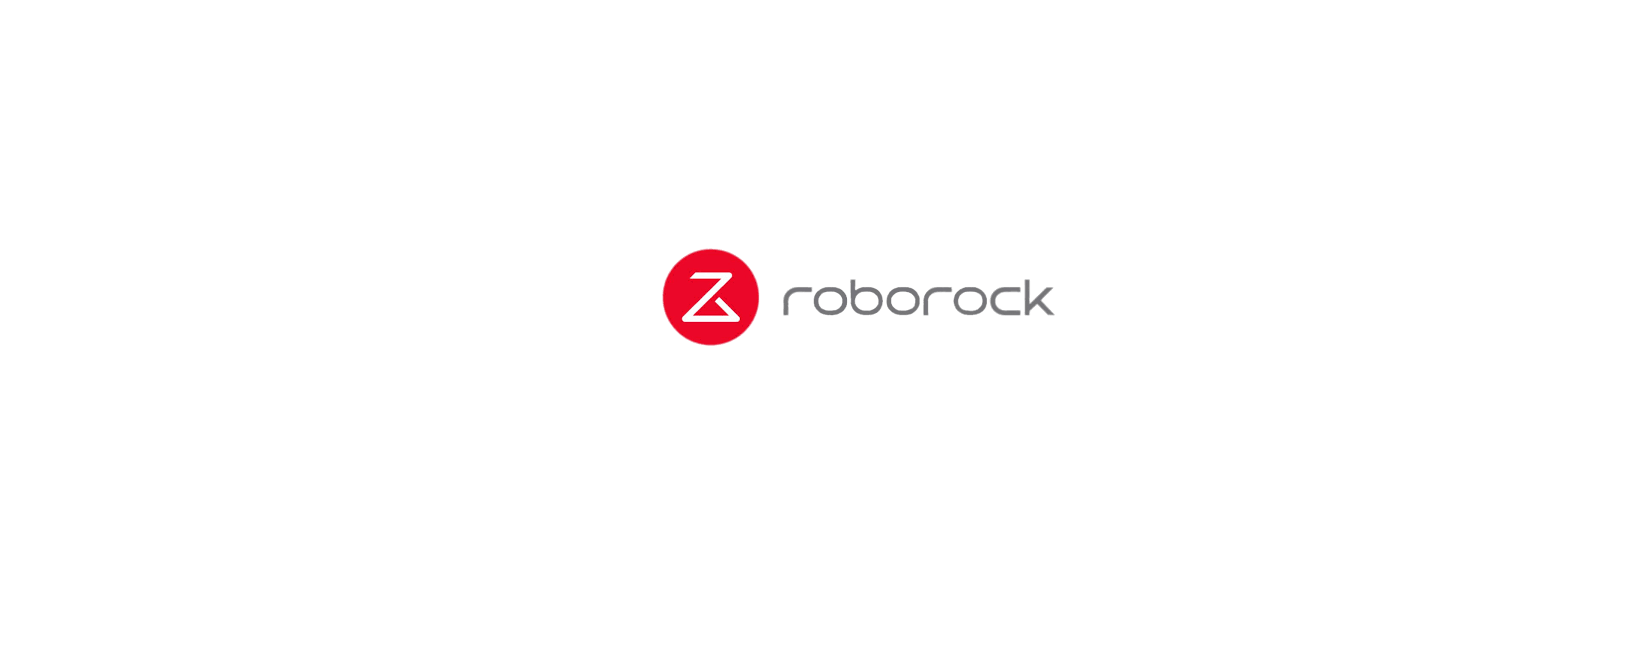 Roborock Discount Code 2022